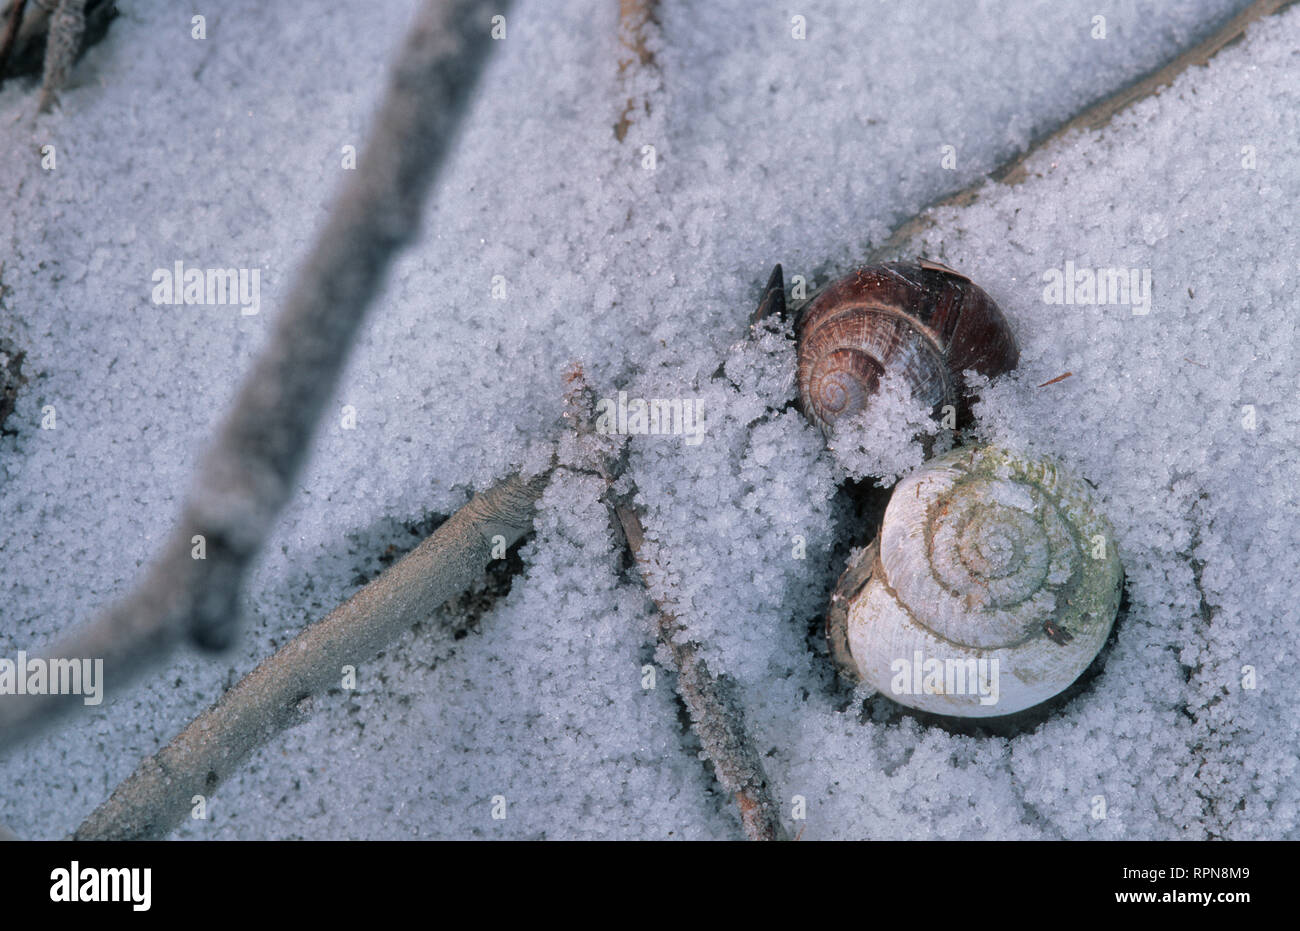 Zoologie/Tiere, Weichtiere (Mollusca), zwei schneckenhaus im Schnee, Klosterneuburg, Österreich, Europa, Additional-Rights - Clearance-Info - Not-Available Stockfoto